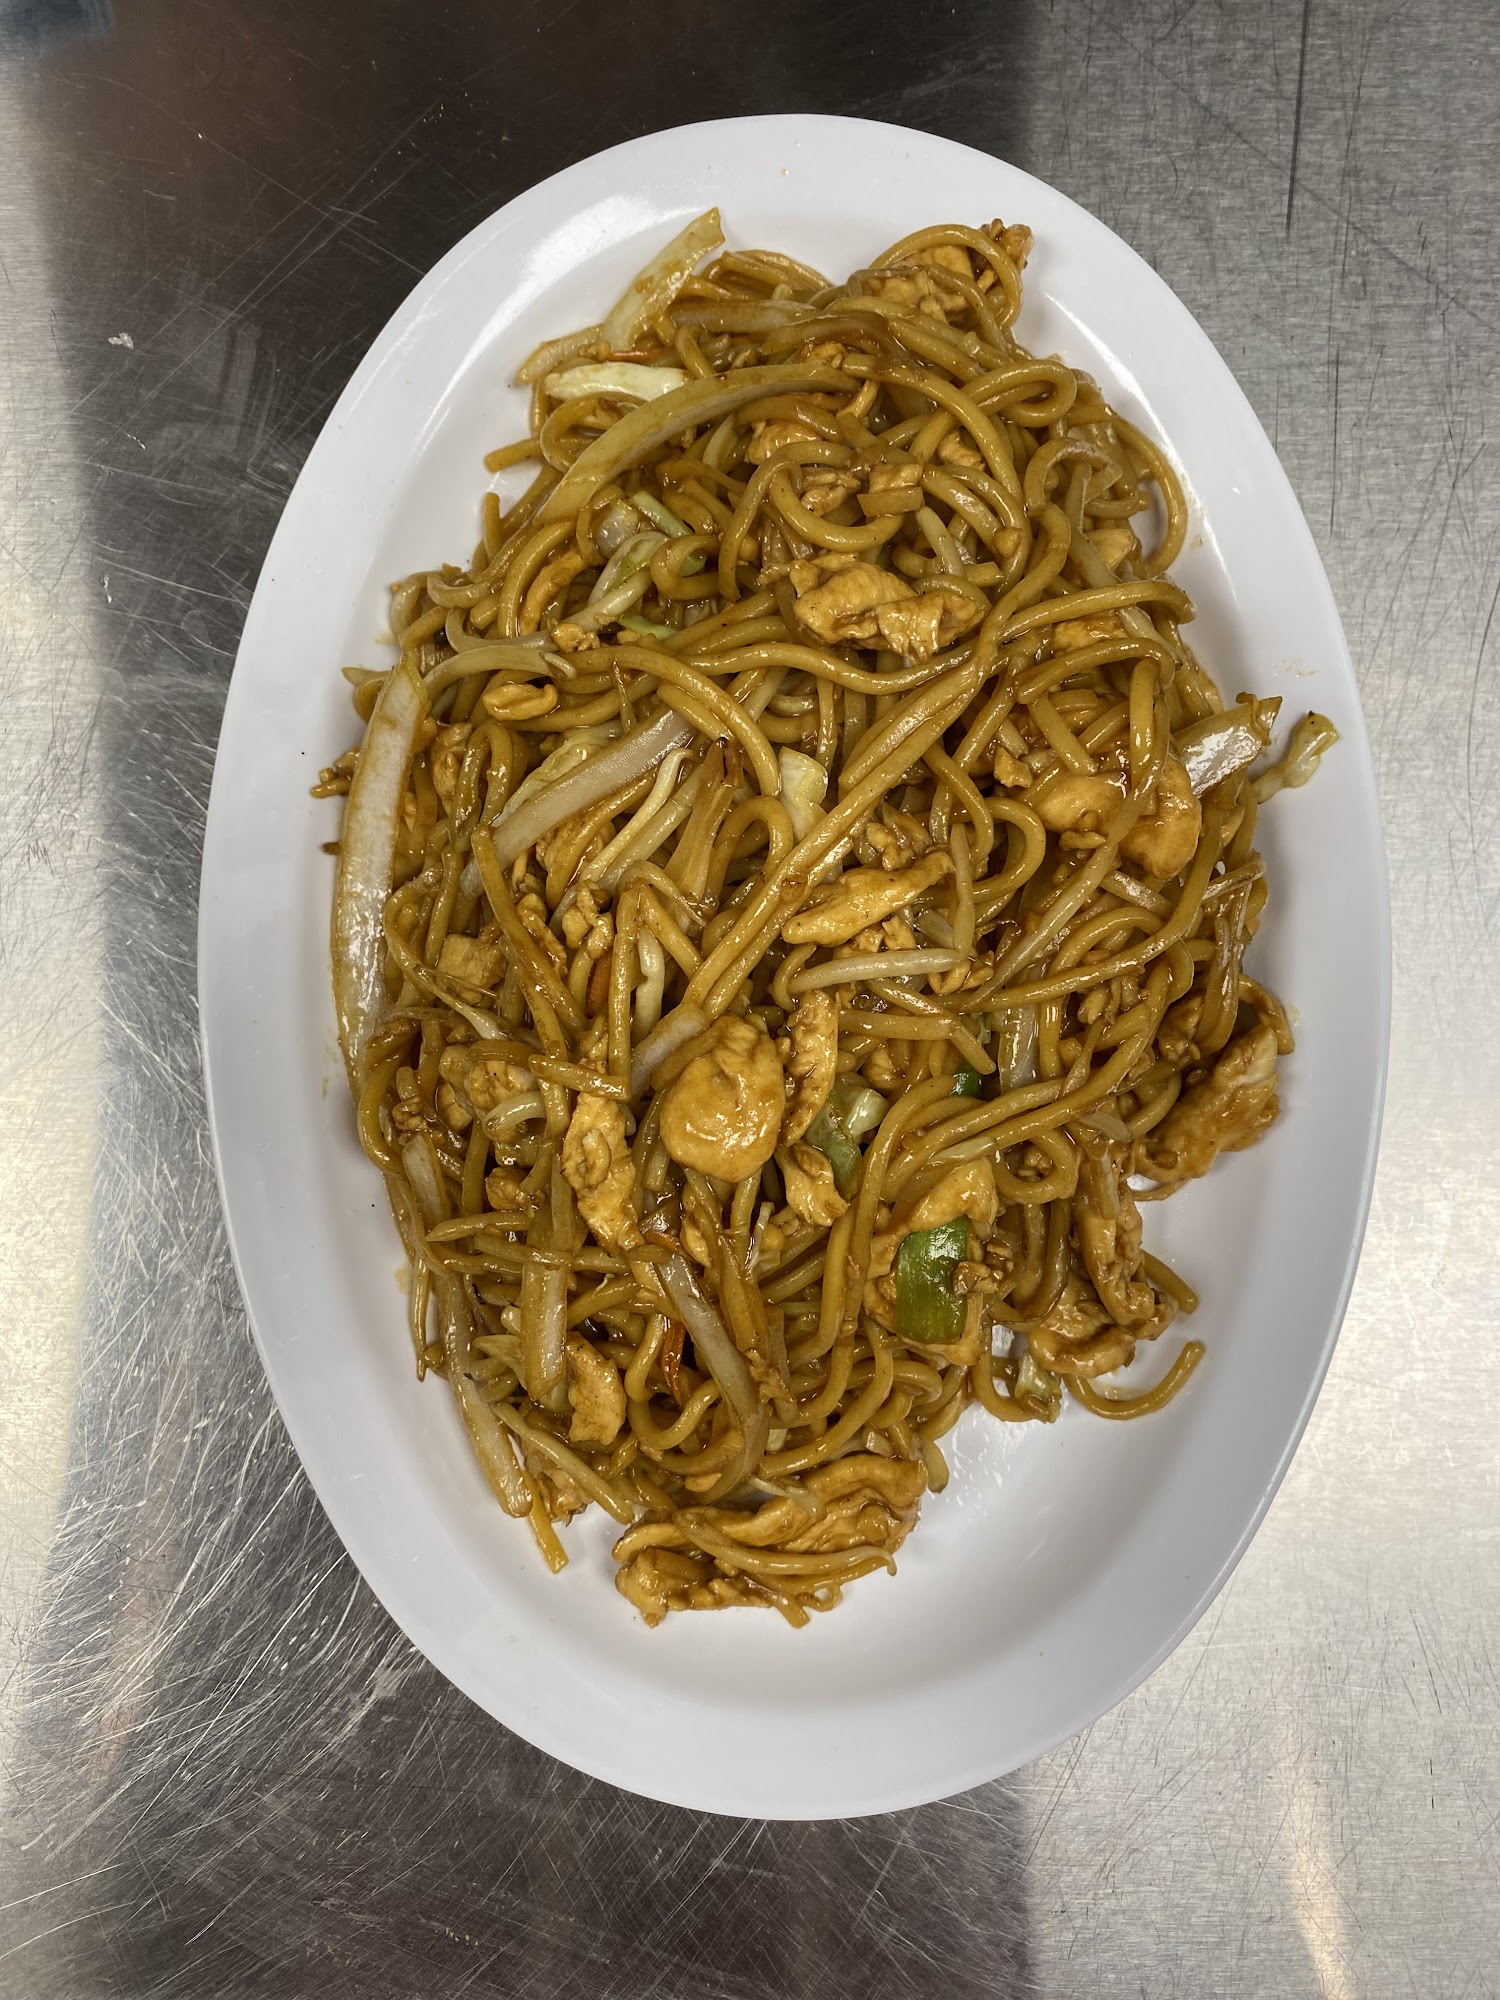 Ah-wok-tukee Asian Cuisine